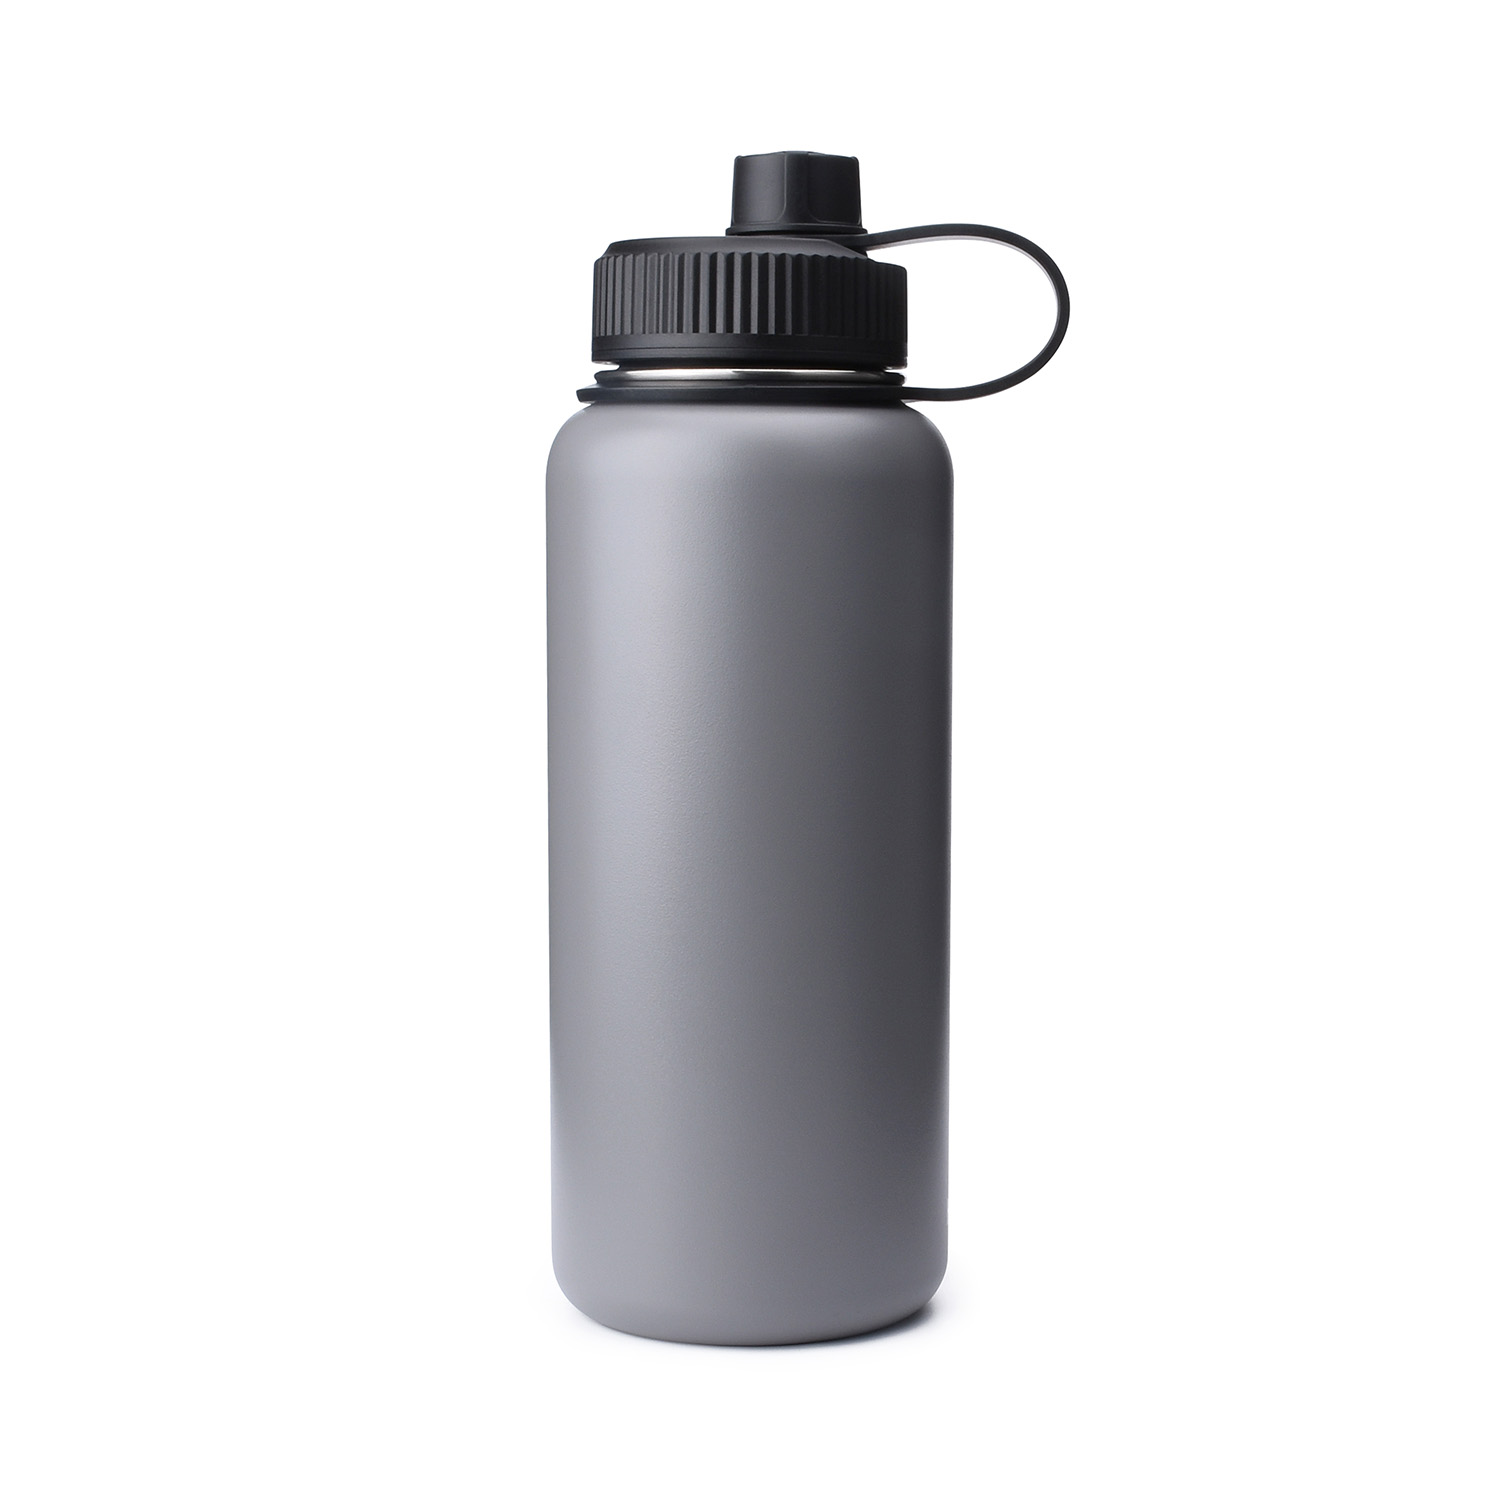 https://www.waterbottle.tech/wp-content/uploads/2018/10/water-bottle-with-wide-mouth-spout-lid-s111899-1.jpg